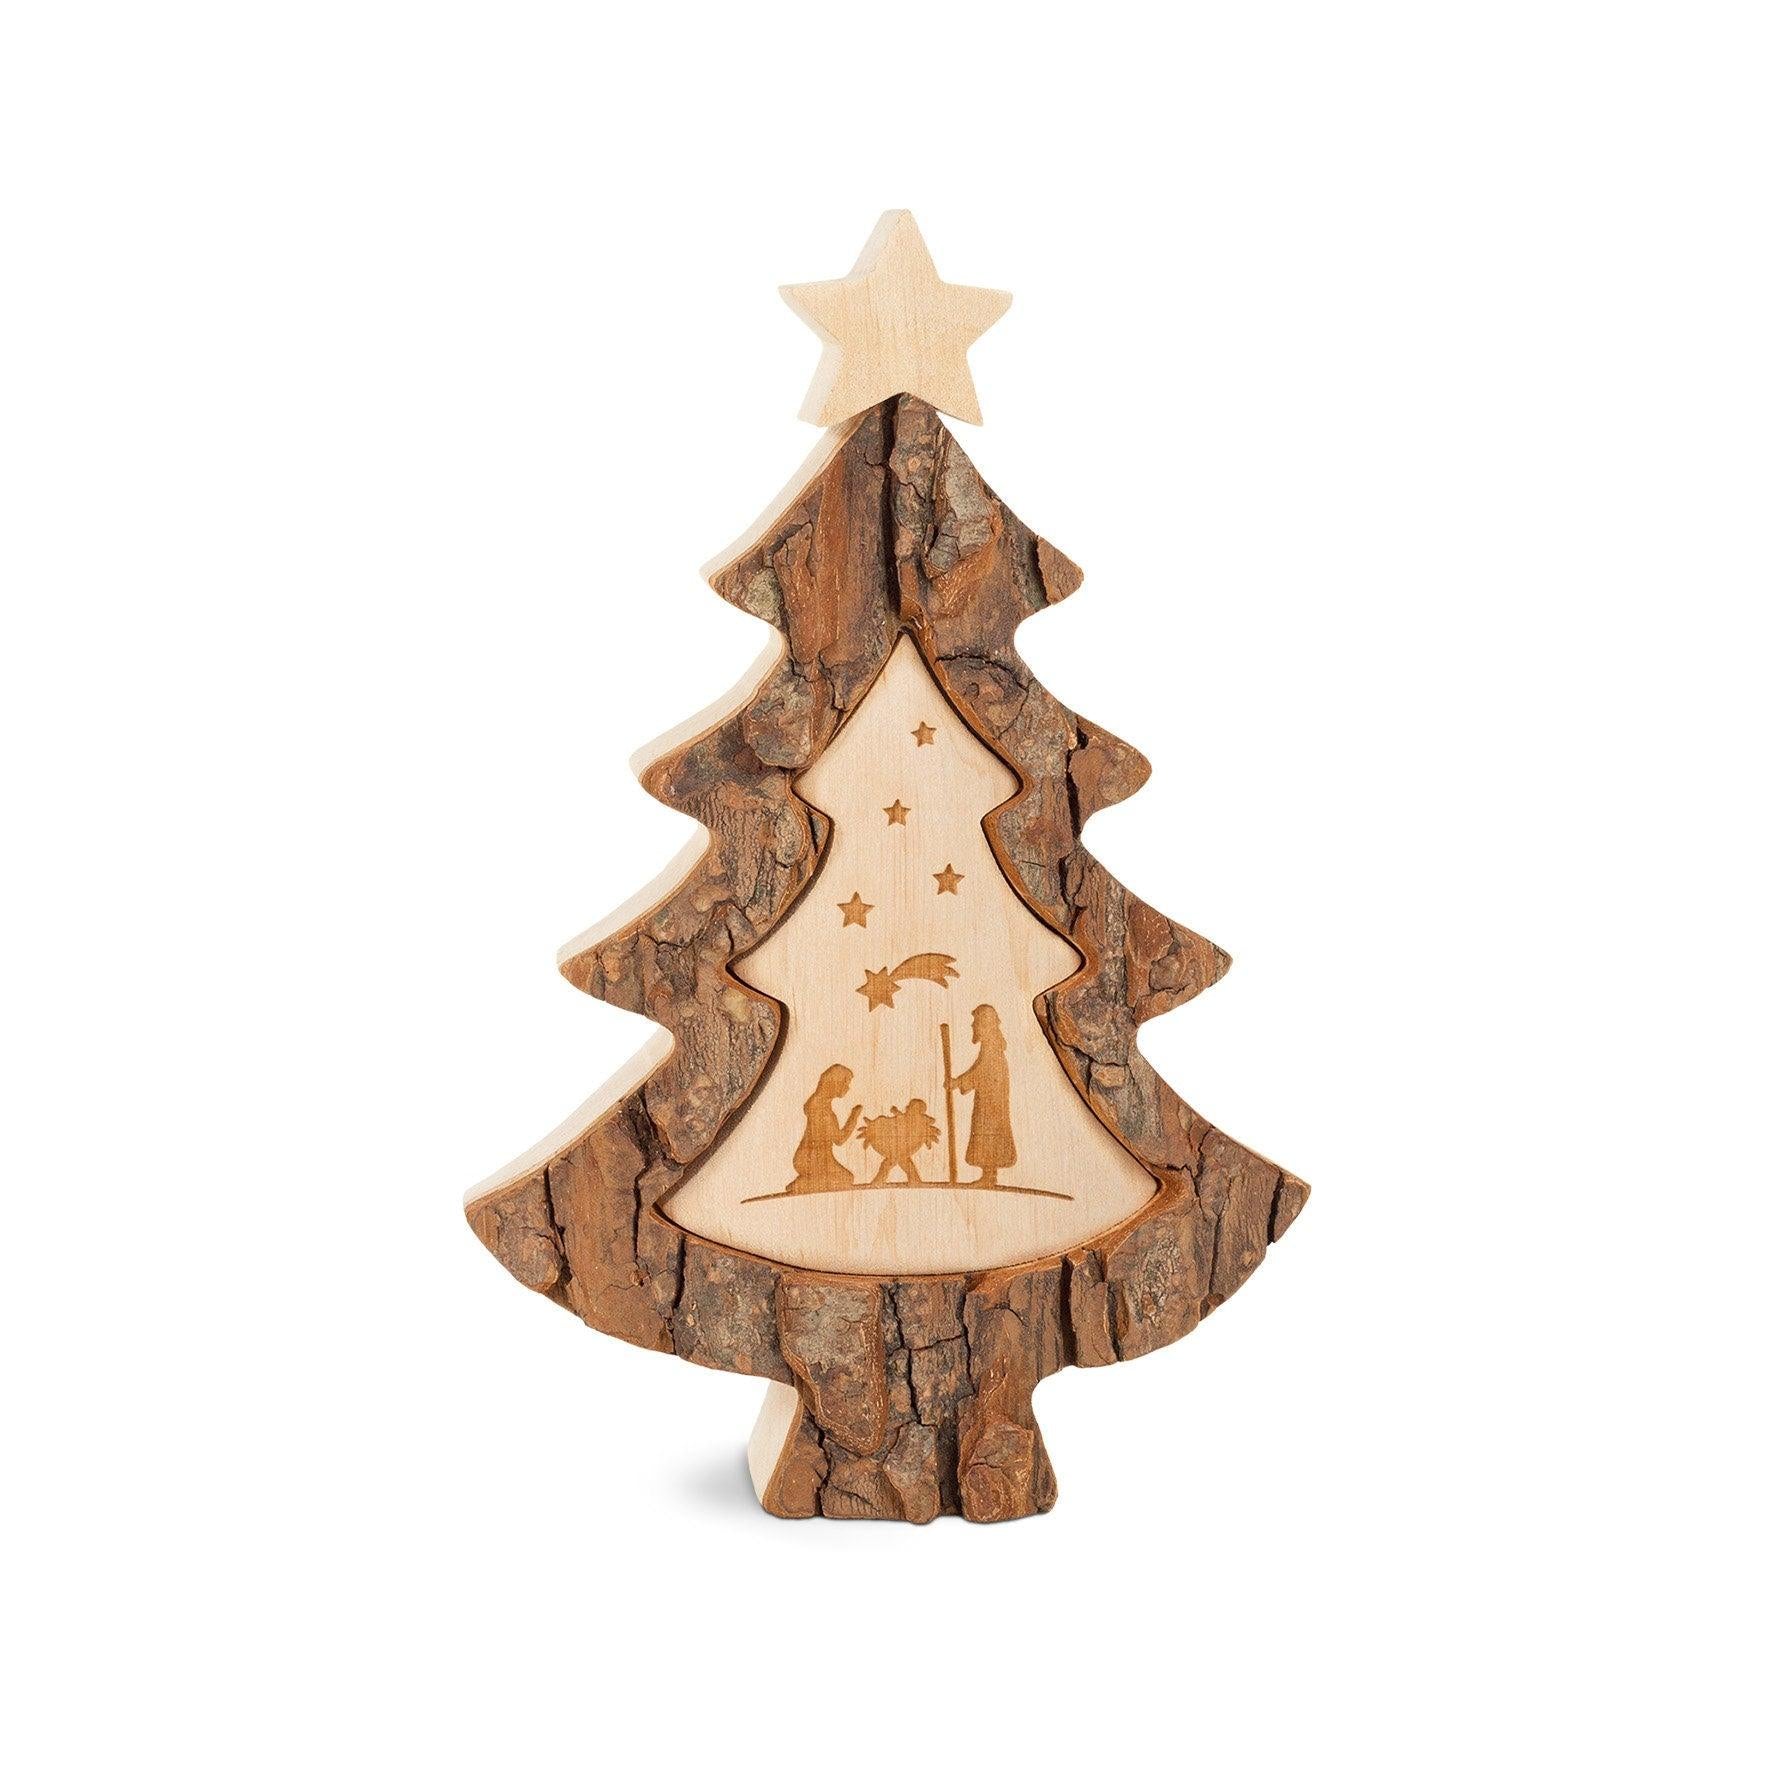 Weihnachtsbaum mit Lasermotiv Krippe - Thankgoods